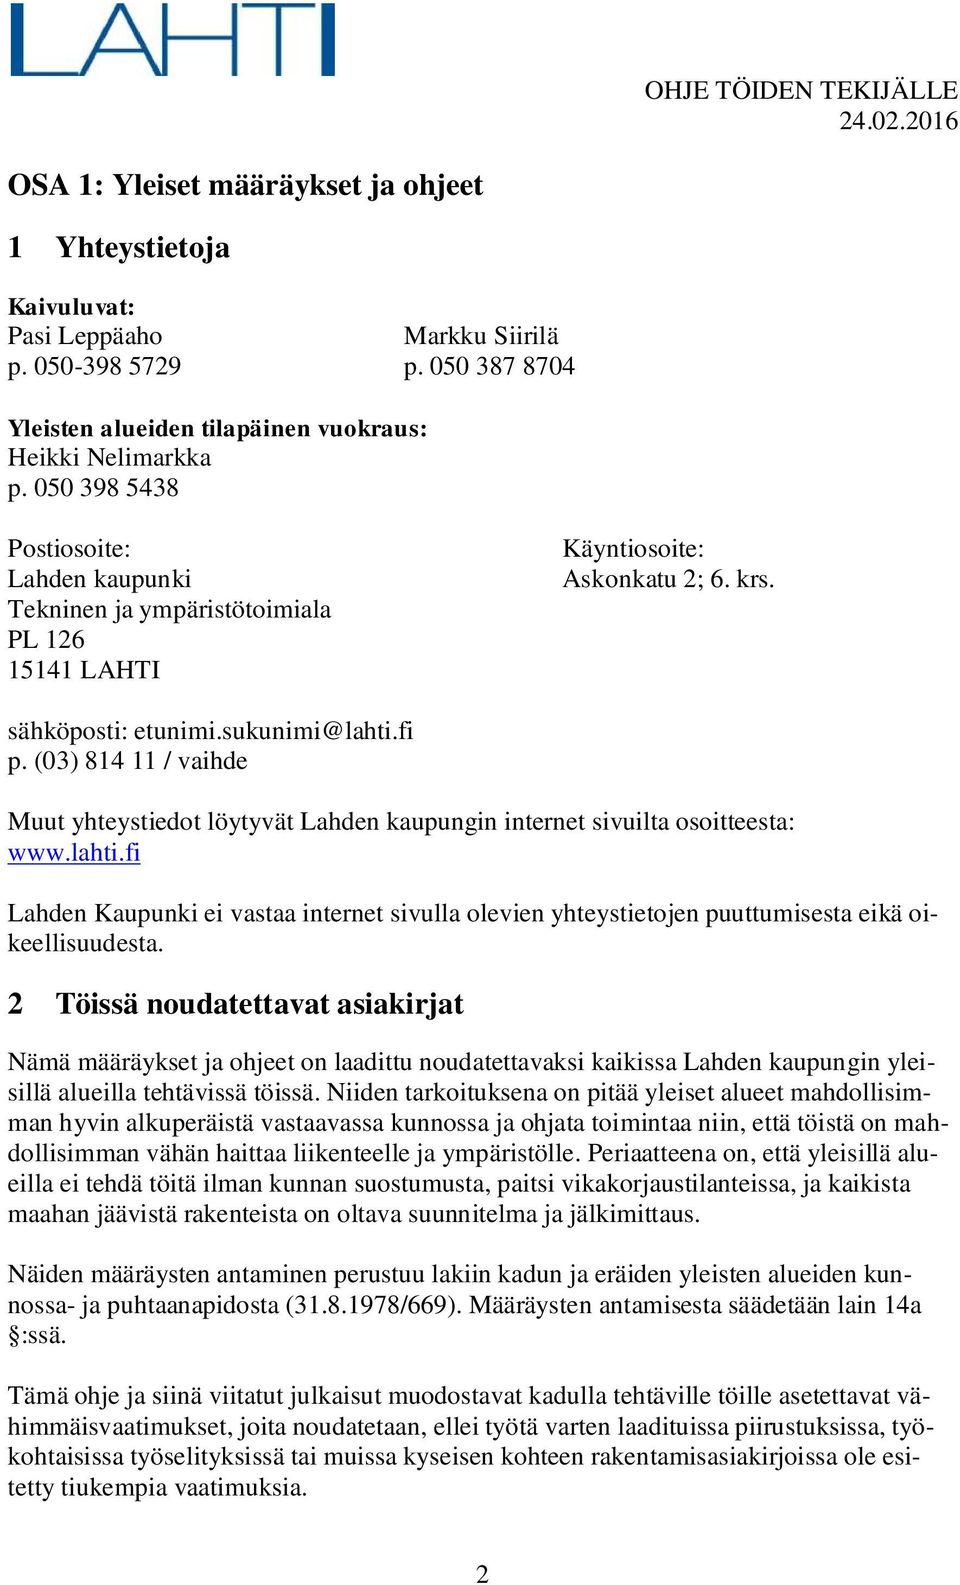 (03) 814 11 / vaihde Muut yhteystiedot löytyvät Lahden kaupungin internet sivuilta osoitteesta: www.lahti.